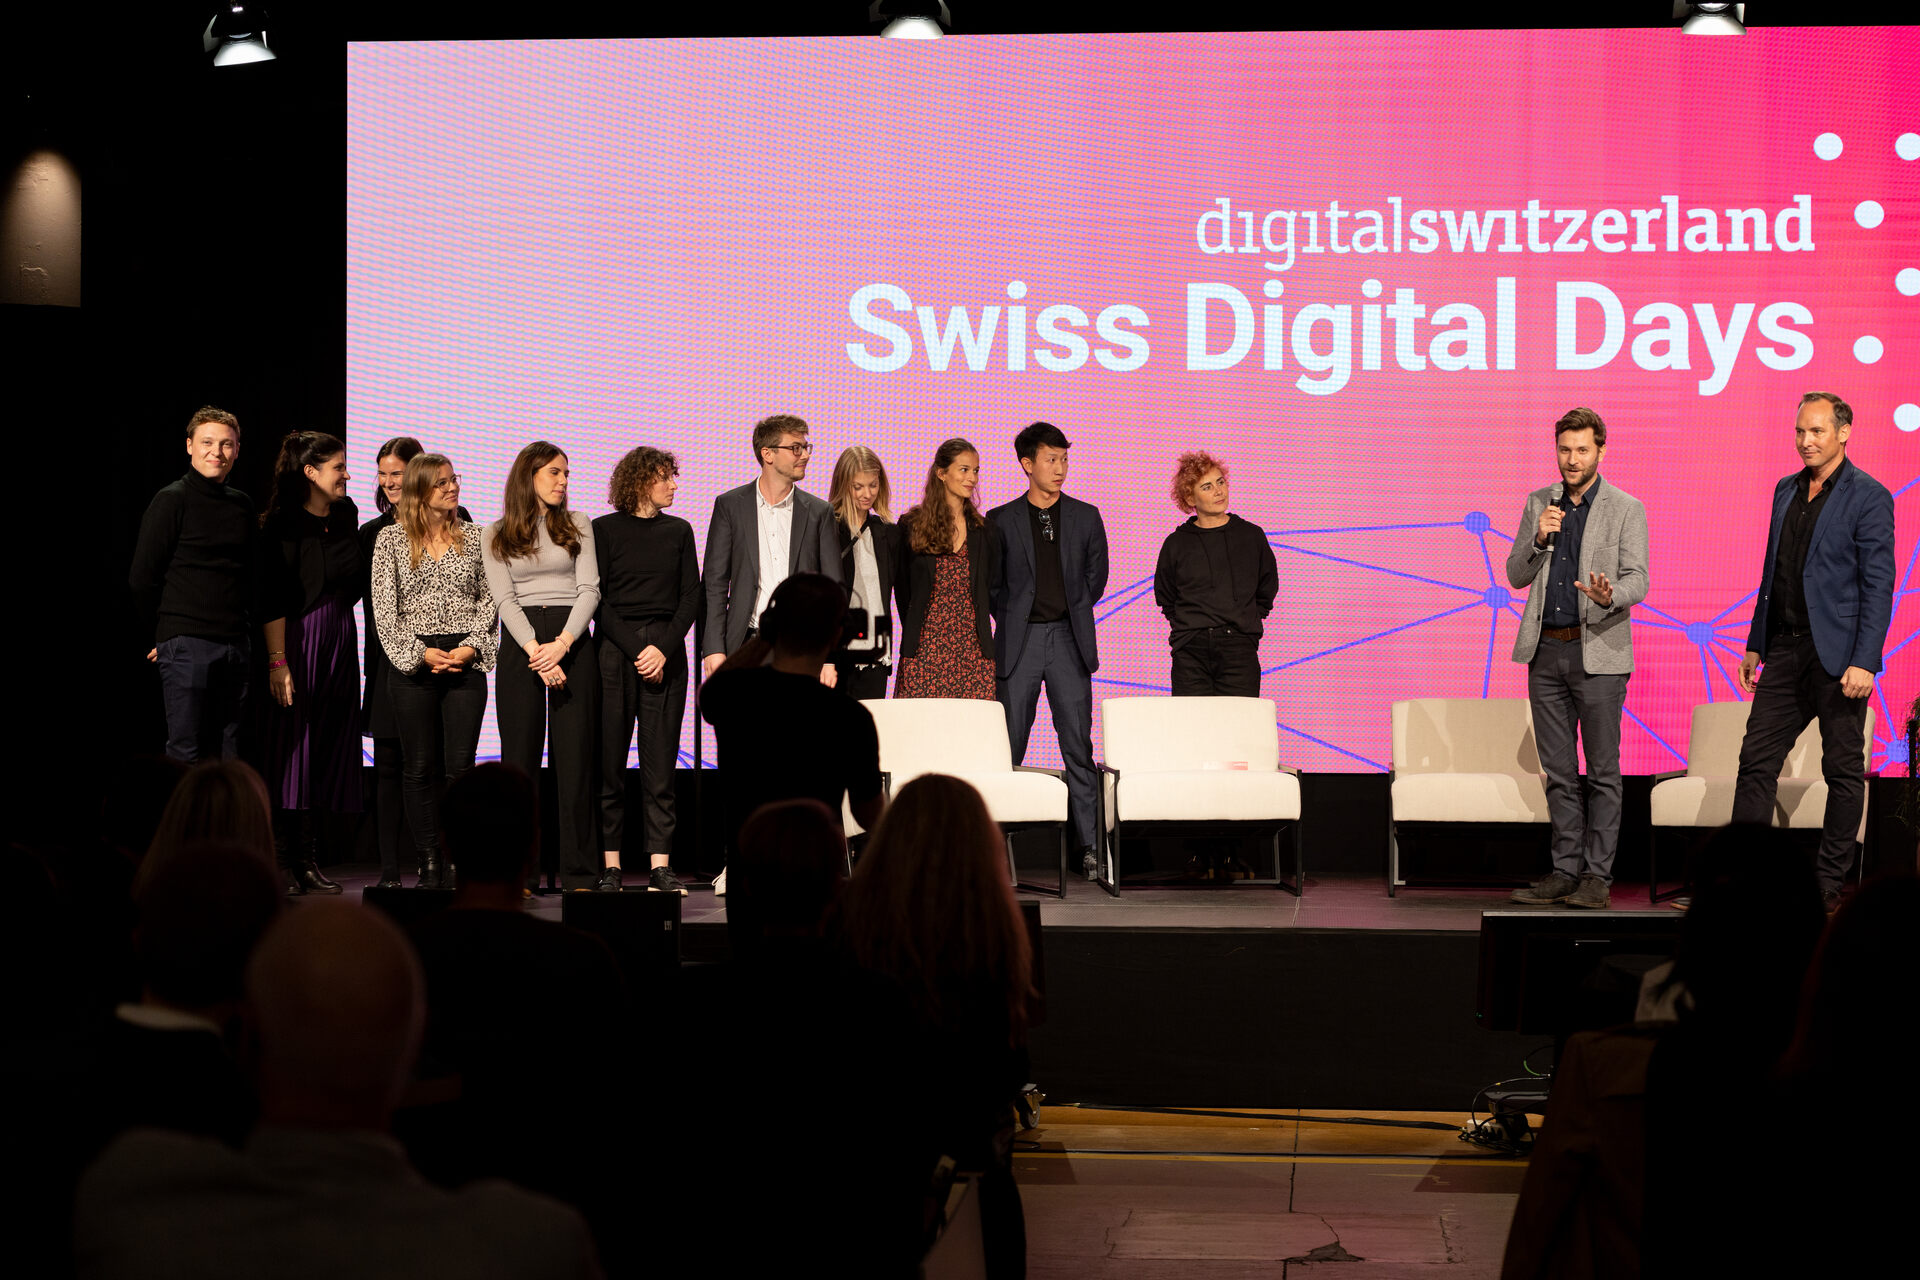 Swiss Digital Days: Avslutningsevenemanget för "Swiss Digital Days" 2022 på Freiruum i Zug (Zug) den 27 oktober: arrangörsteamet för digitalswitzerland